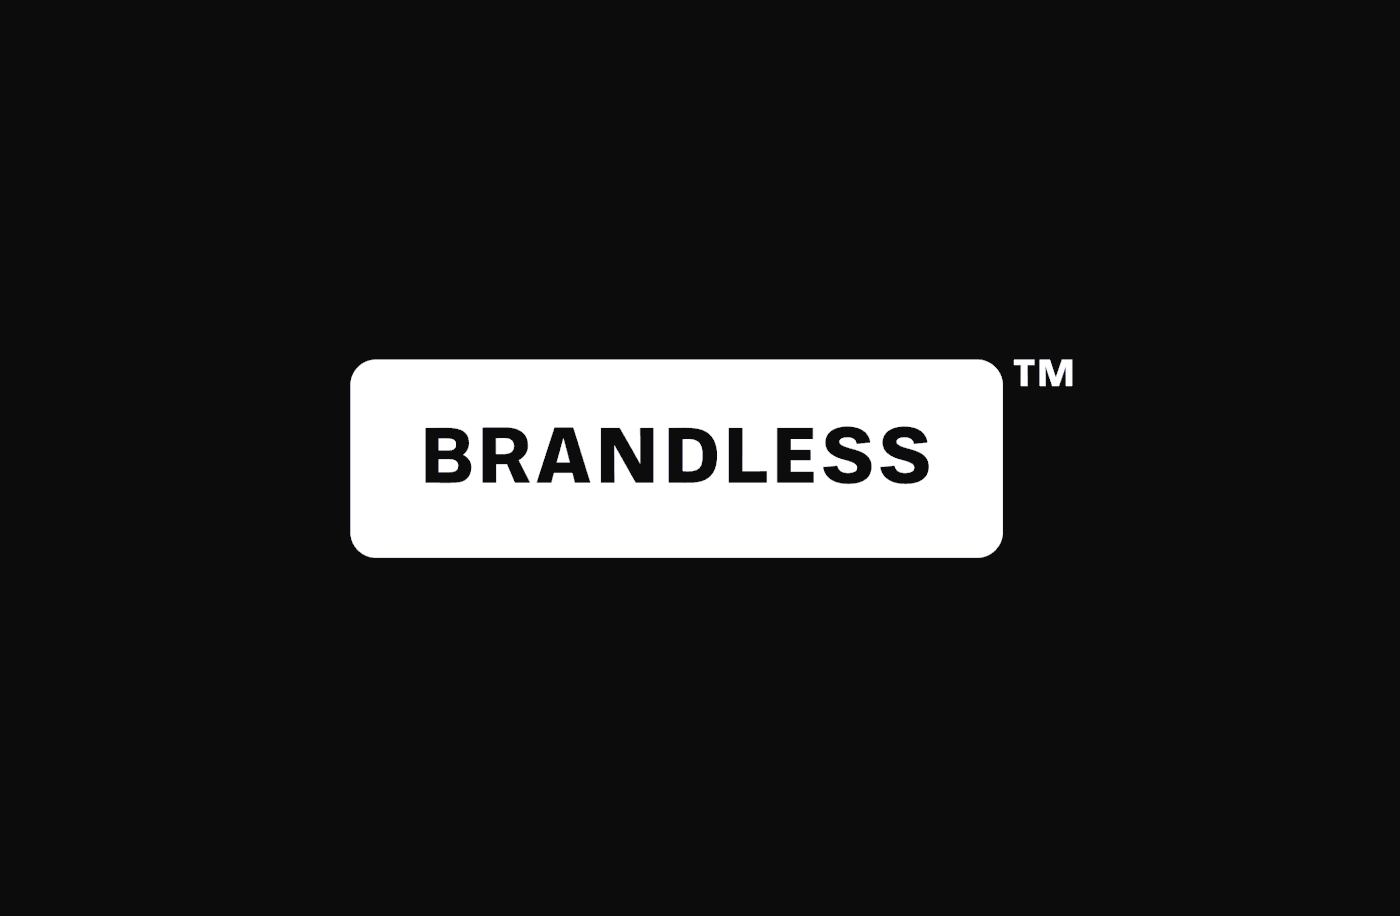 线上购物平台品牌形象设计,爱上简约的 brandless.